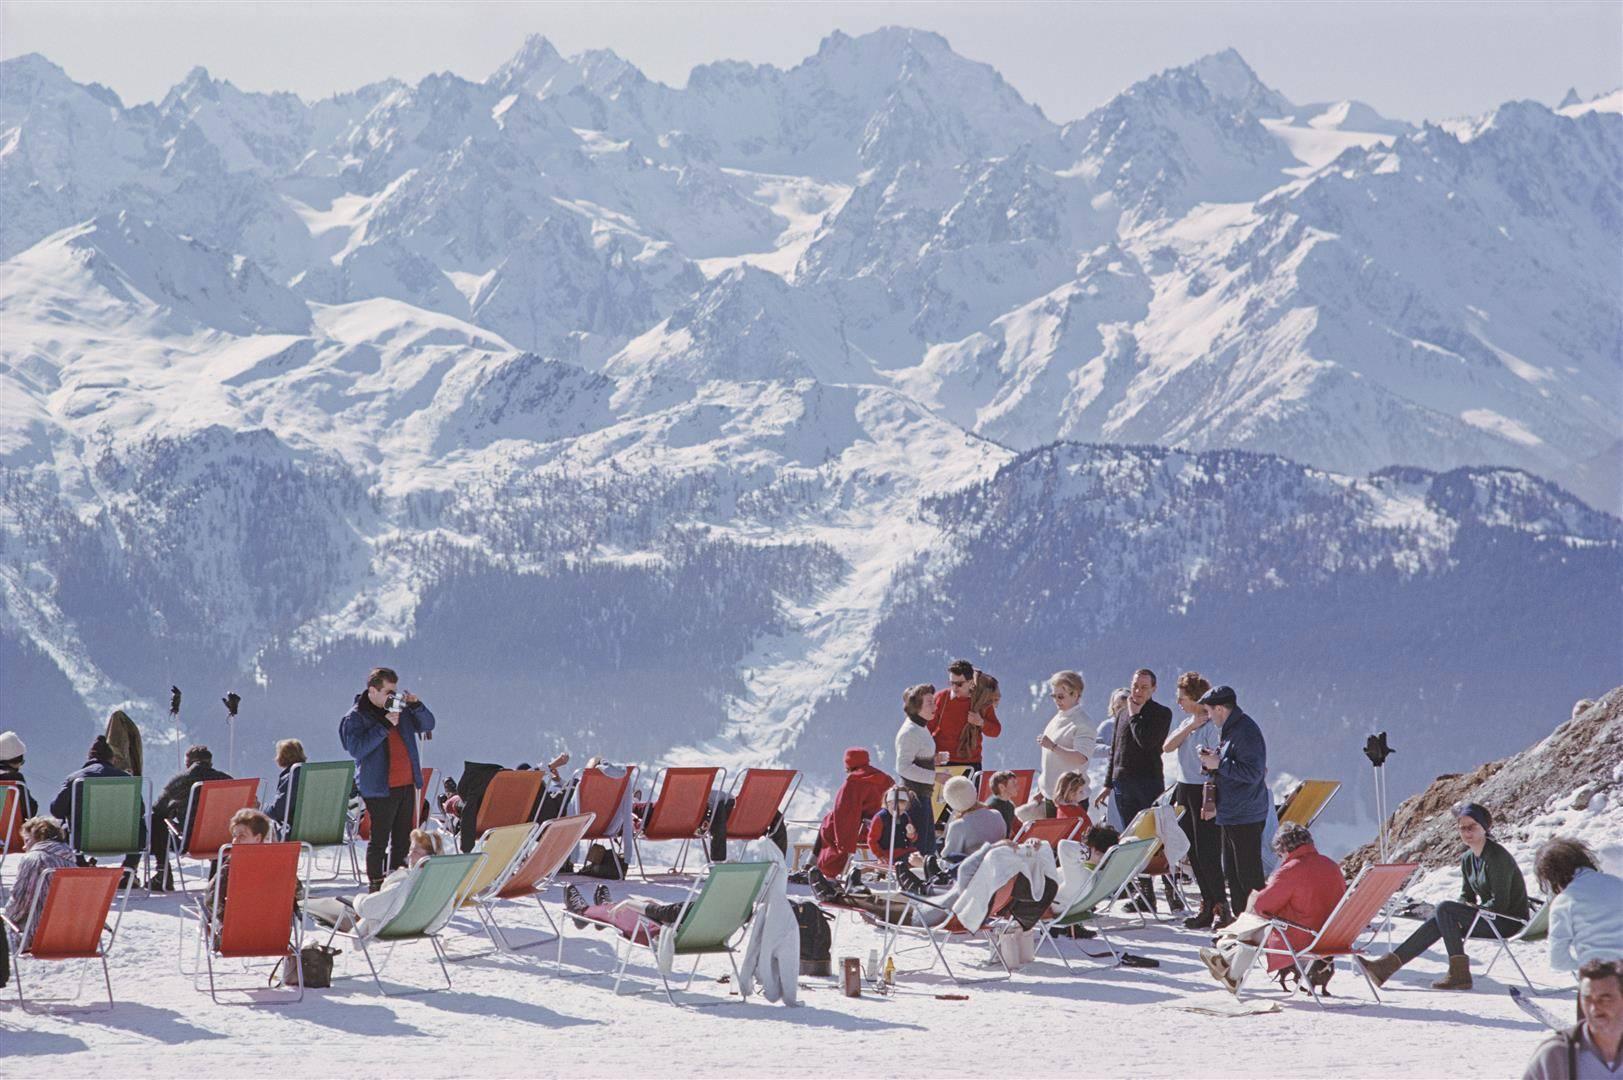 Lounging In Verbier" de Slim Aarons

Vacanciers dans des chaises longues sur les pistes de Verbier, Suisse, février 1964.

Cette photographie incarne le voyage, le style de vie et le glamour des personnes riches et célèbres de l'époque, ainsi que